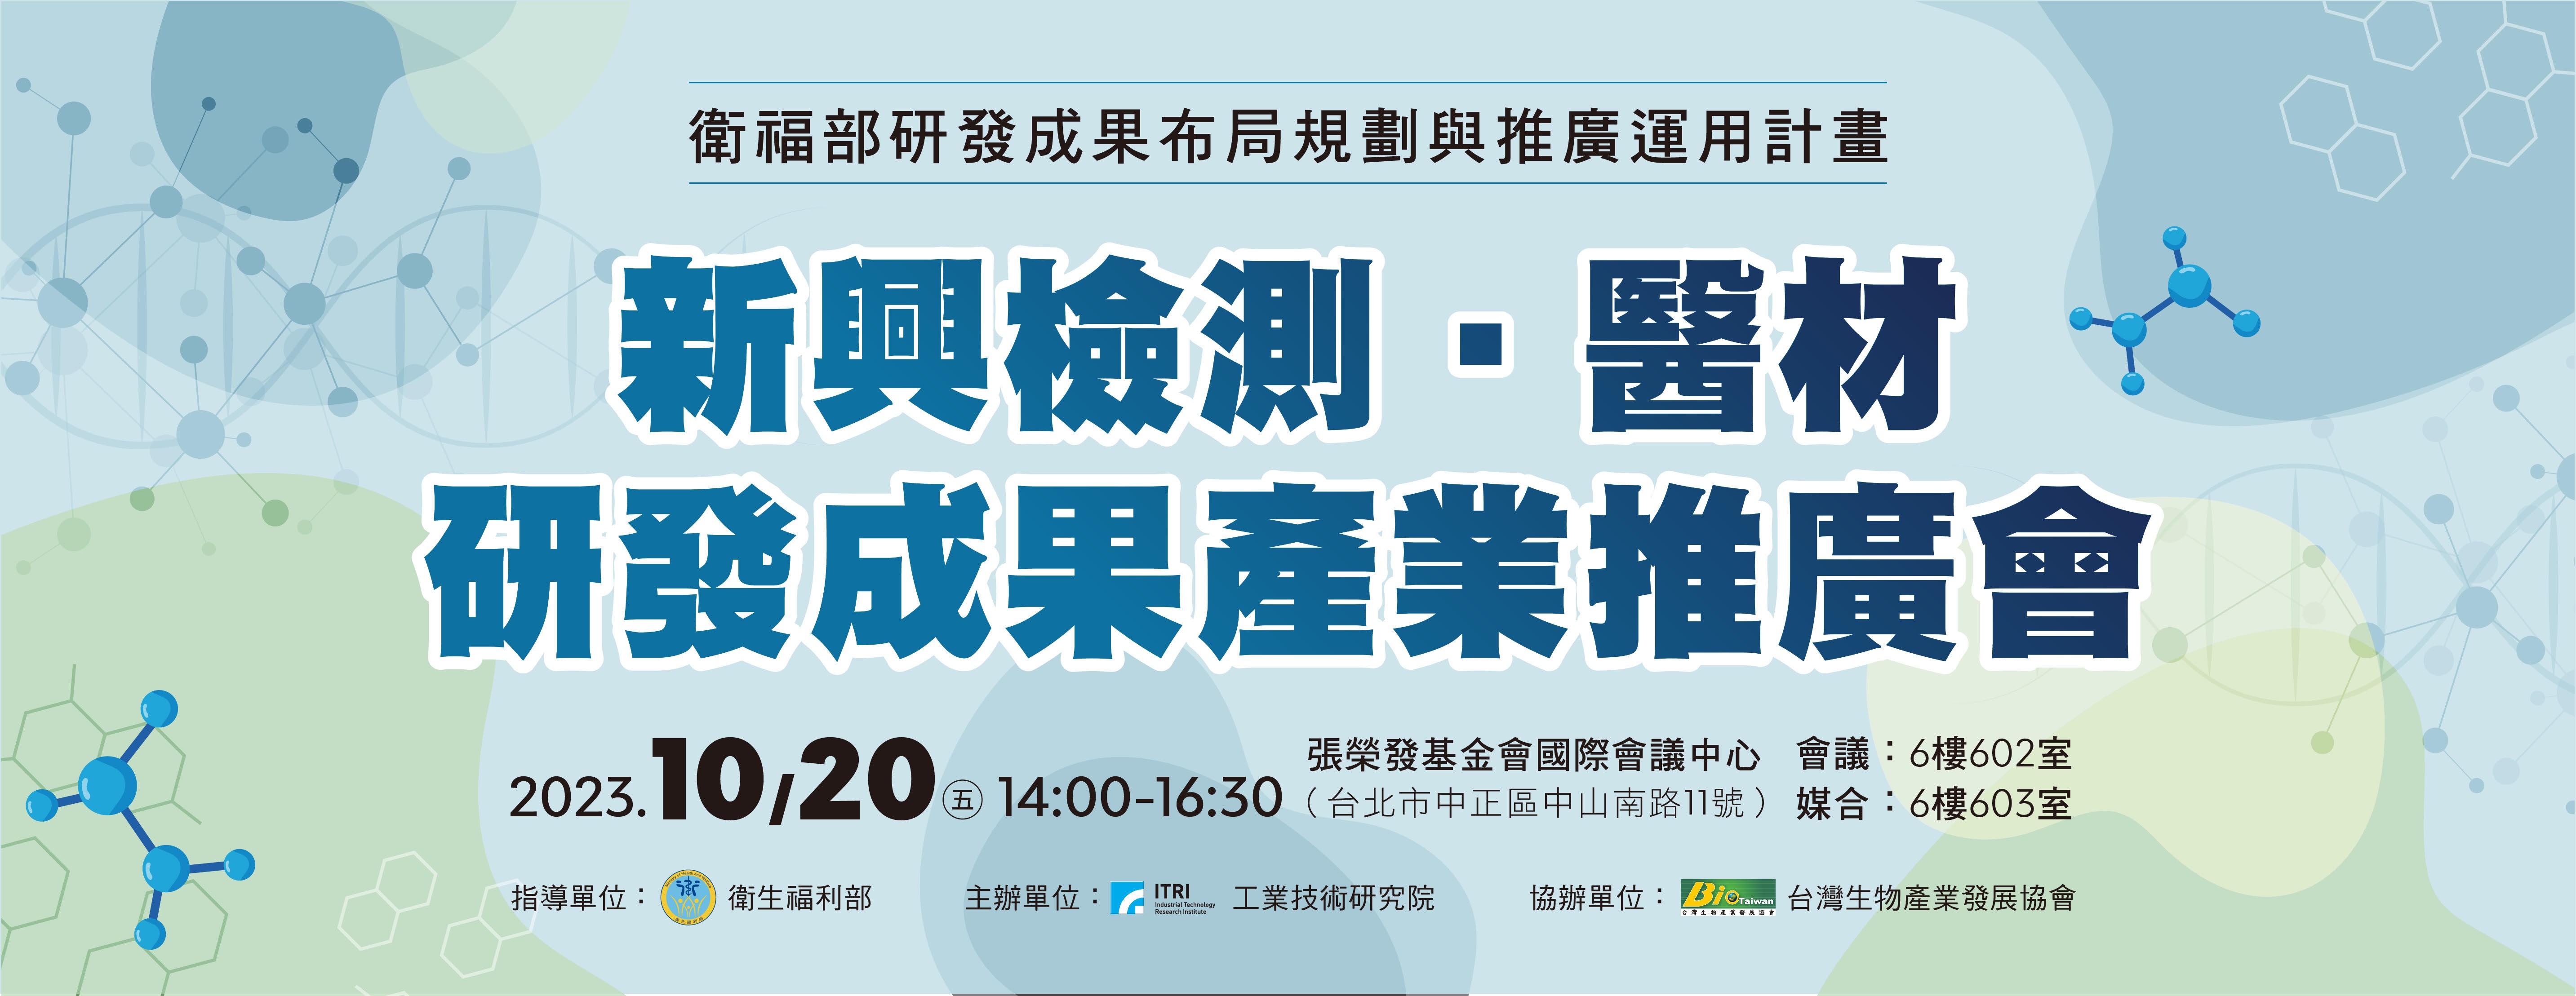 【活動】台灣生物產業協會112年10月20日「新興檢測/醫材 研發成果產業推廣會」